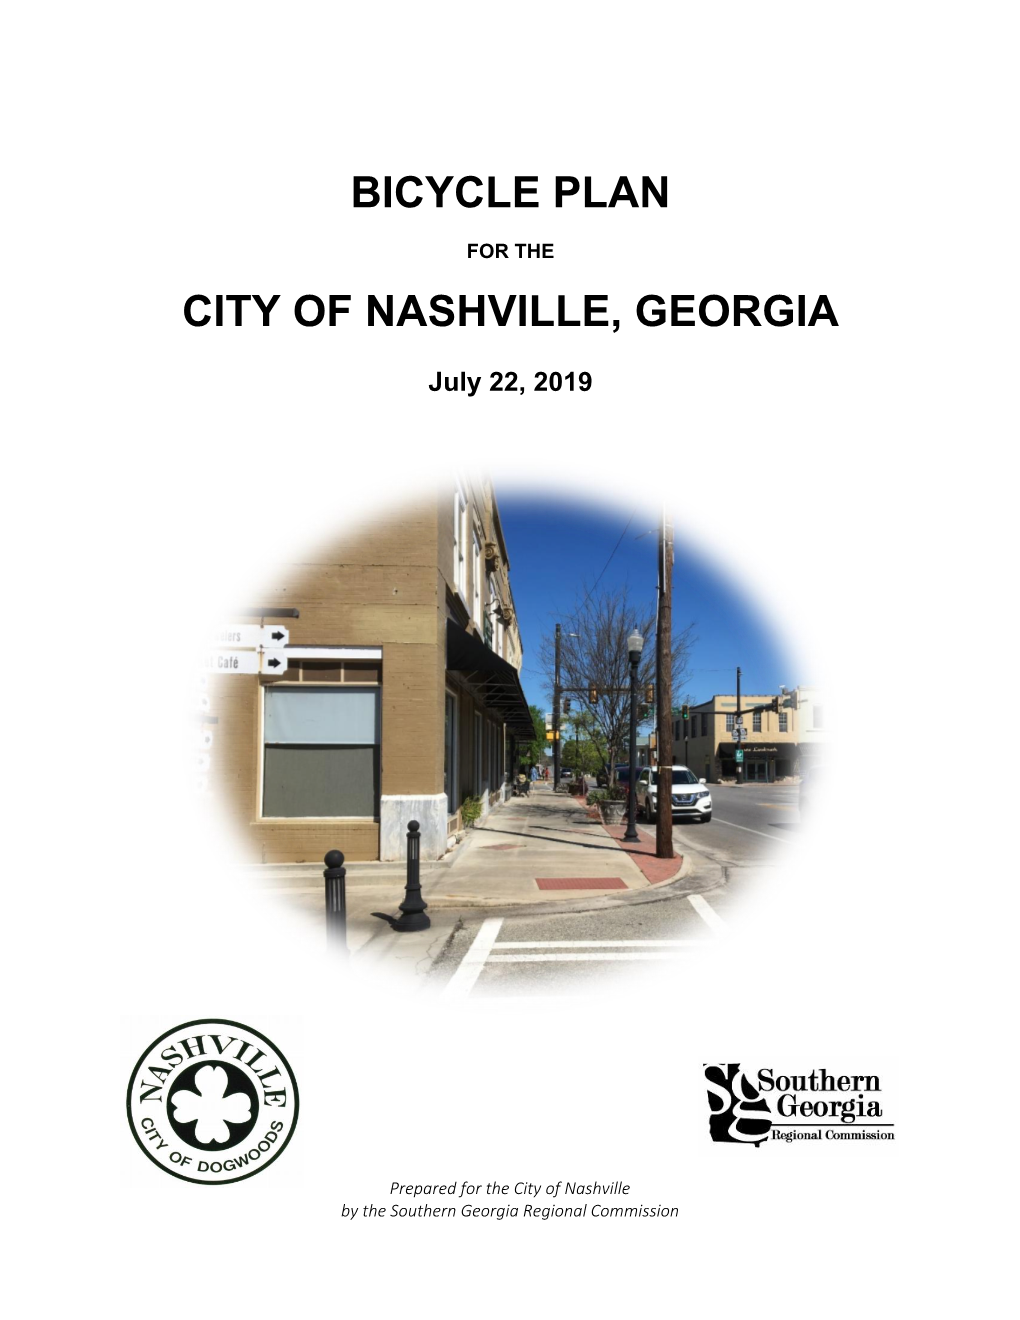 Nashville Bicycle Plan